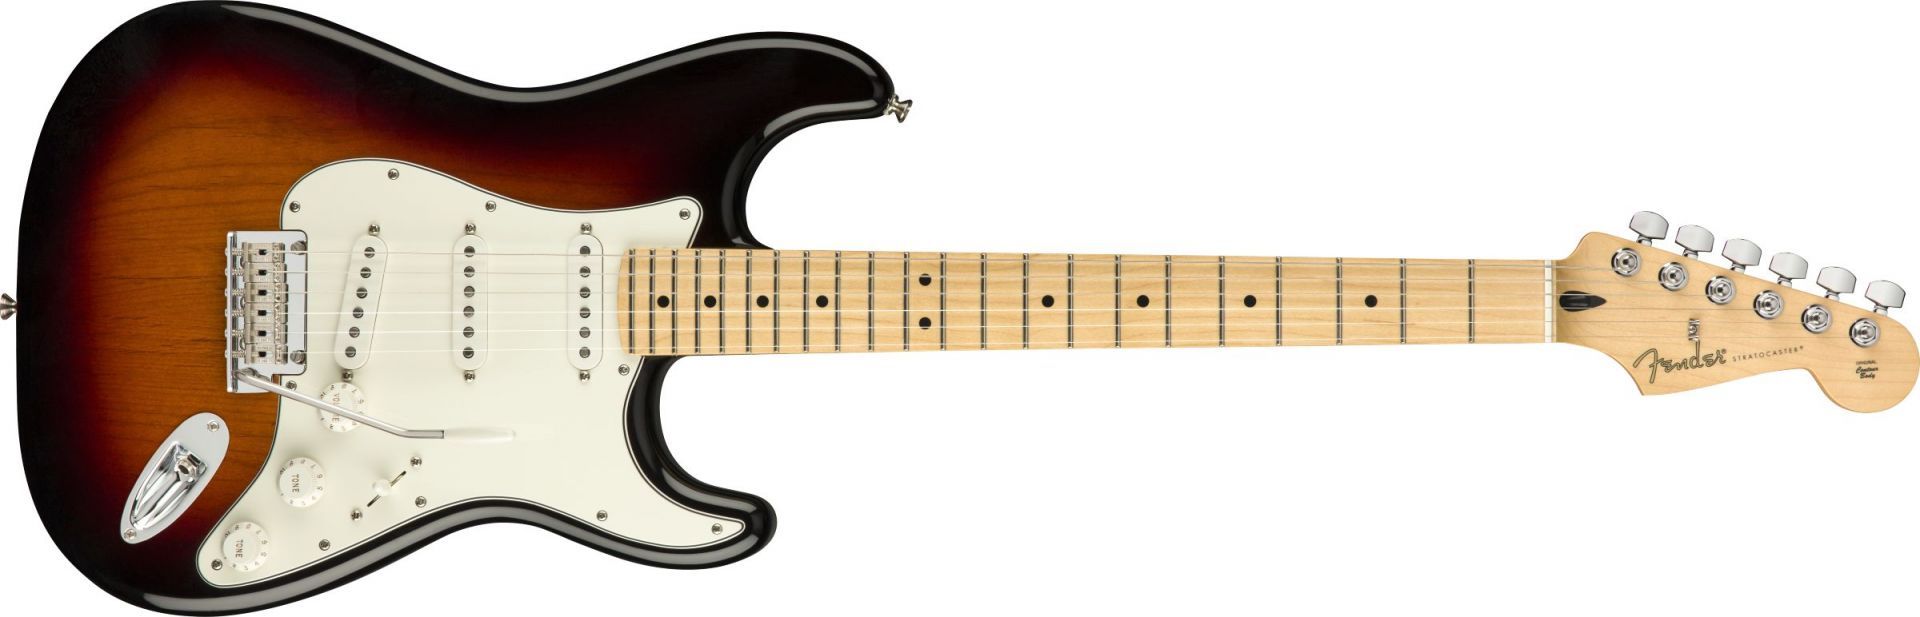 Fender Player Stratocaster 3 Color Sunburst